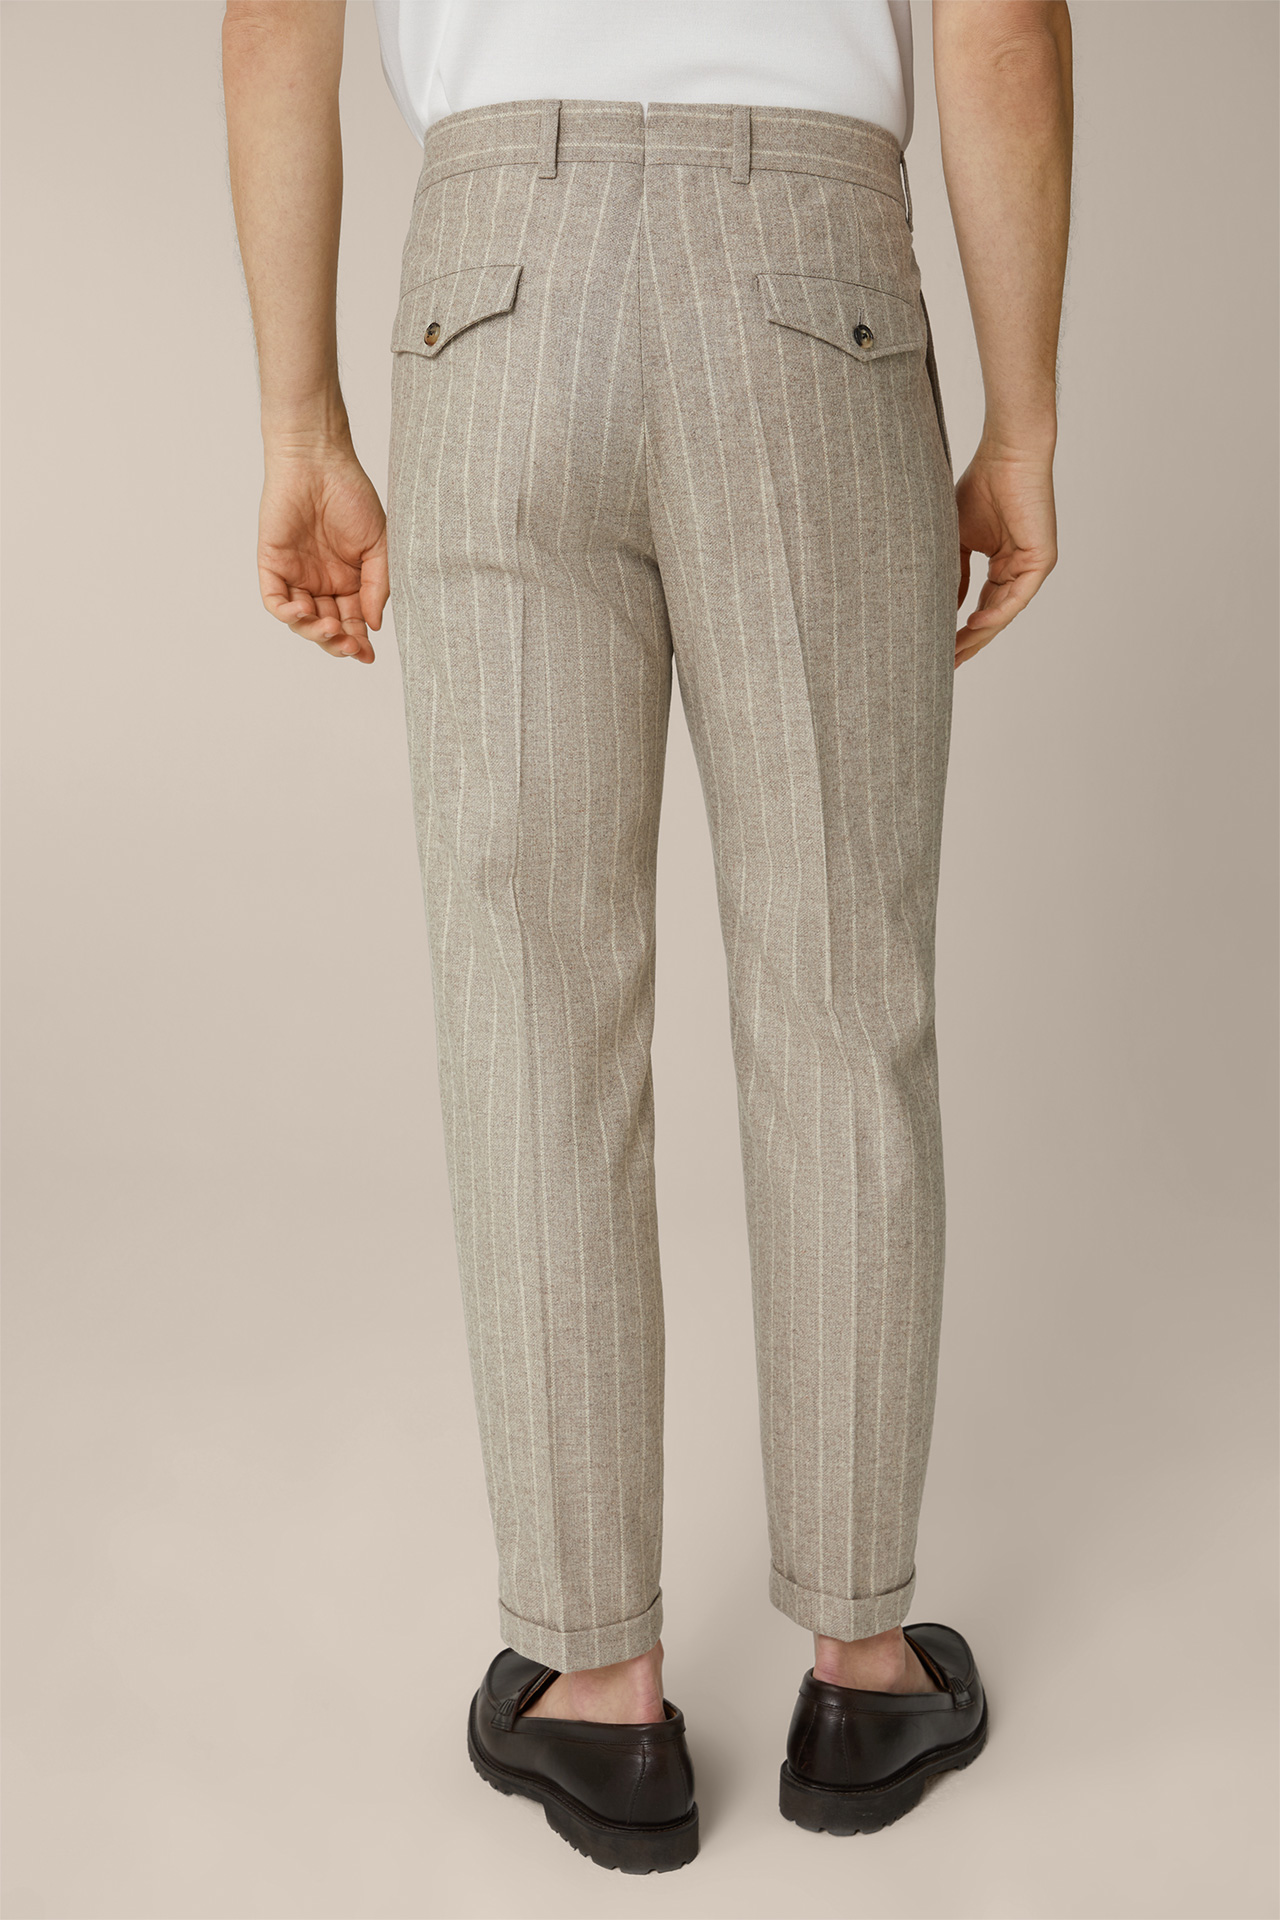 Pantalon modulable en flanelle Serpo, en marron à rayures craie